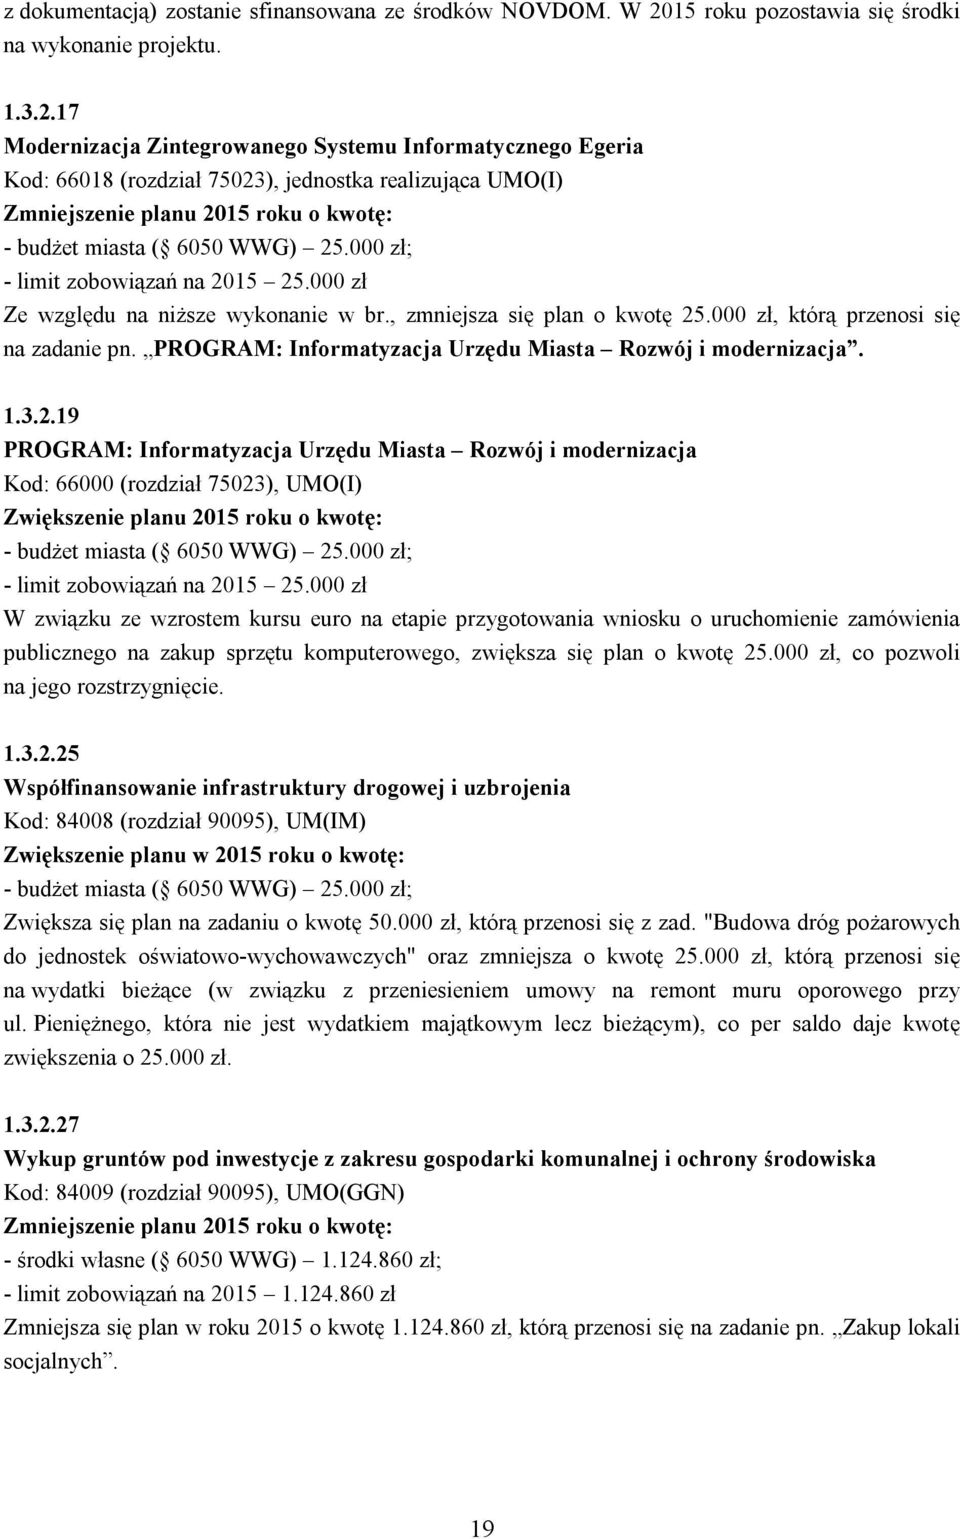 17 Modernizacja Zintegrowanego Systemu Informatycznego Egeria Kod: 66018 (rozdział 75023), jednostka realizująca UMO(I) - budżet miasta ( 6050 WWG) 25.000 zł; - limit zobowiązań na 2015 25.